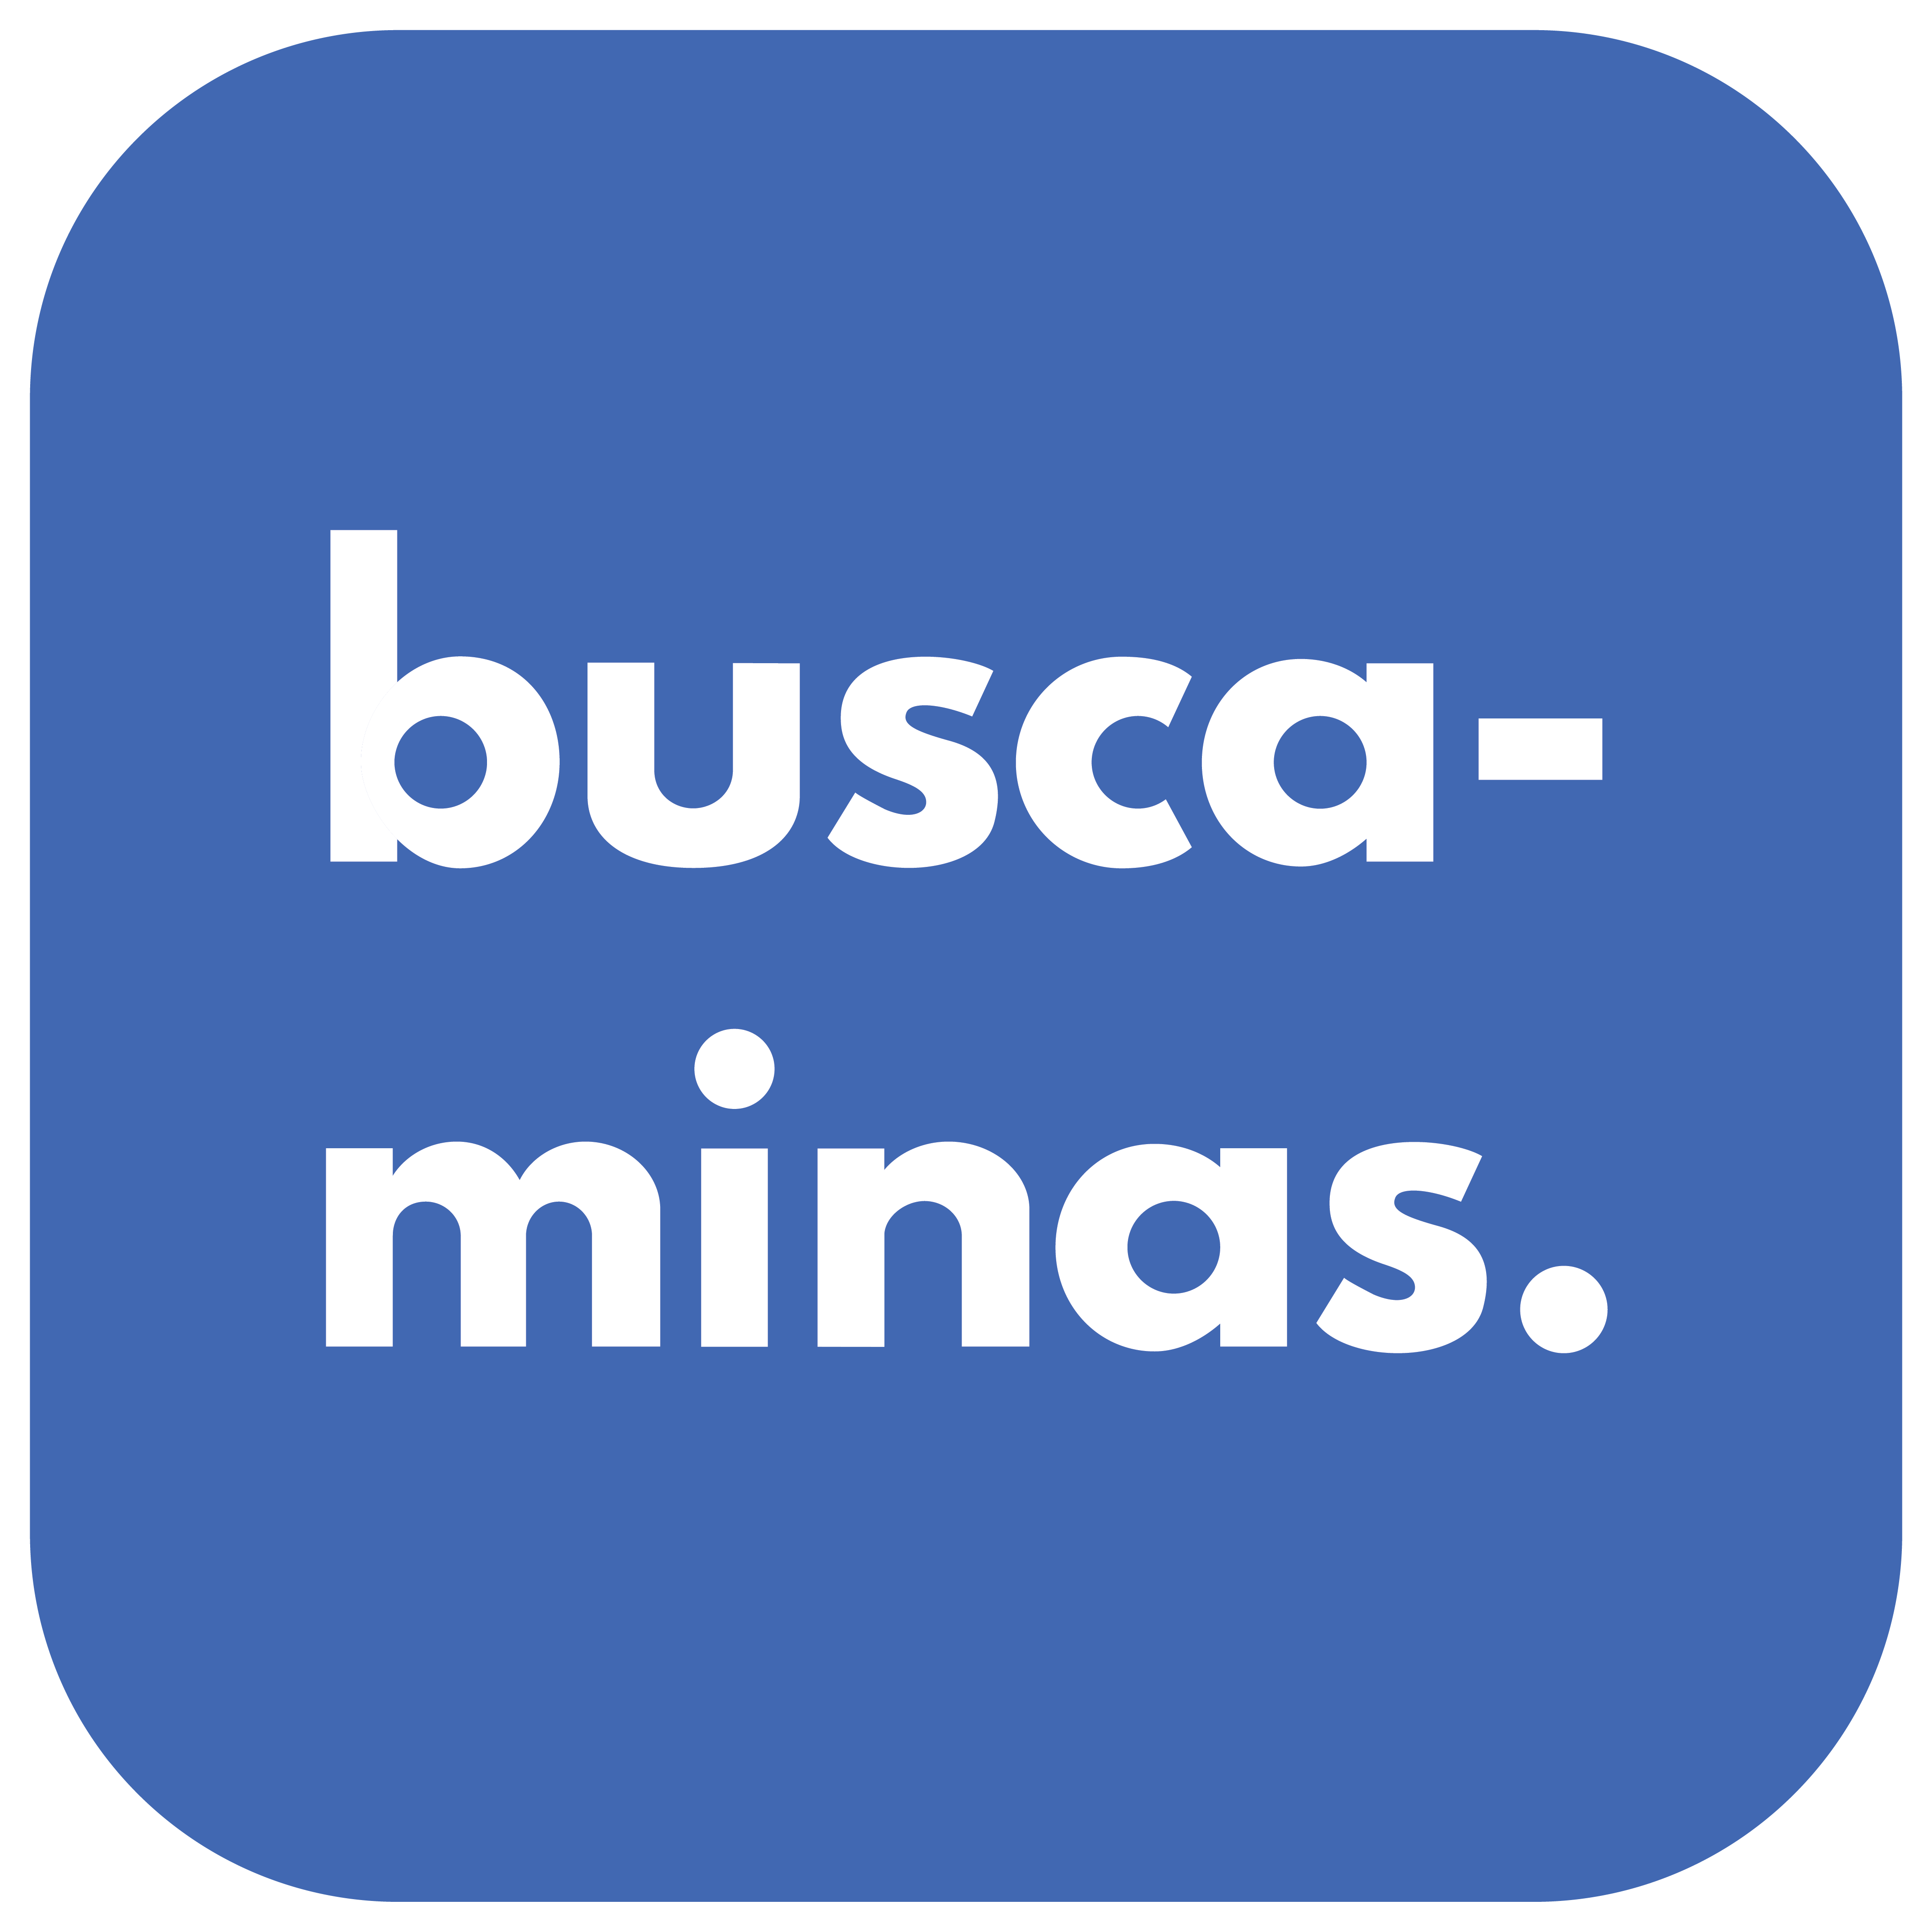 BUSCAMINAS logo